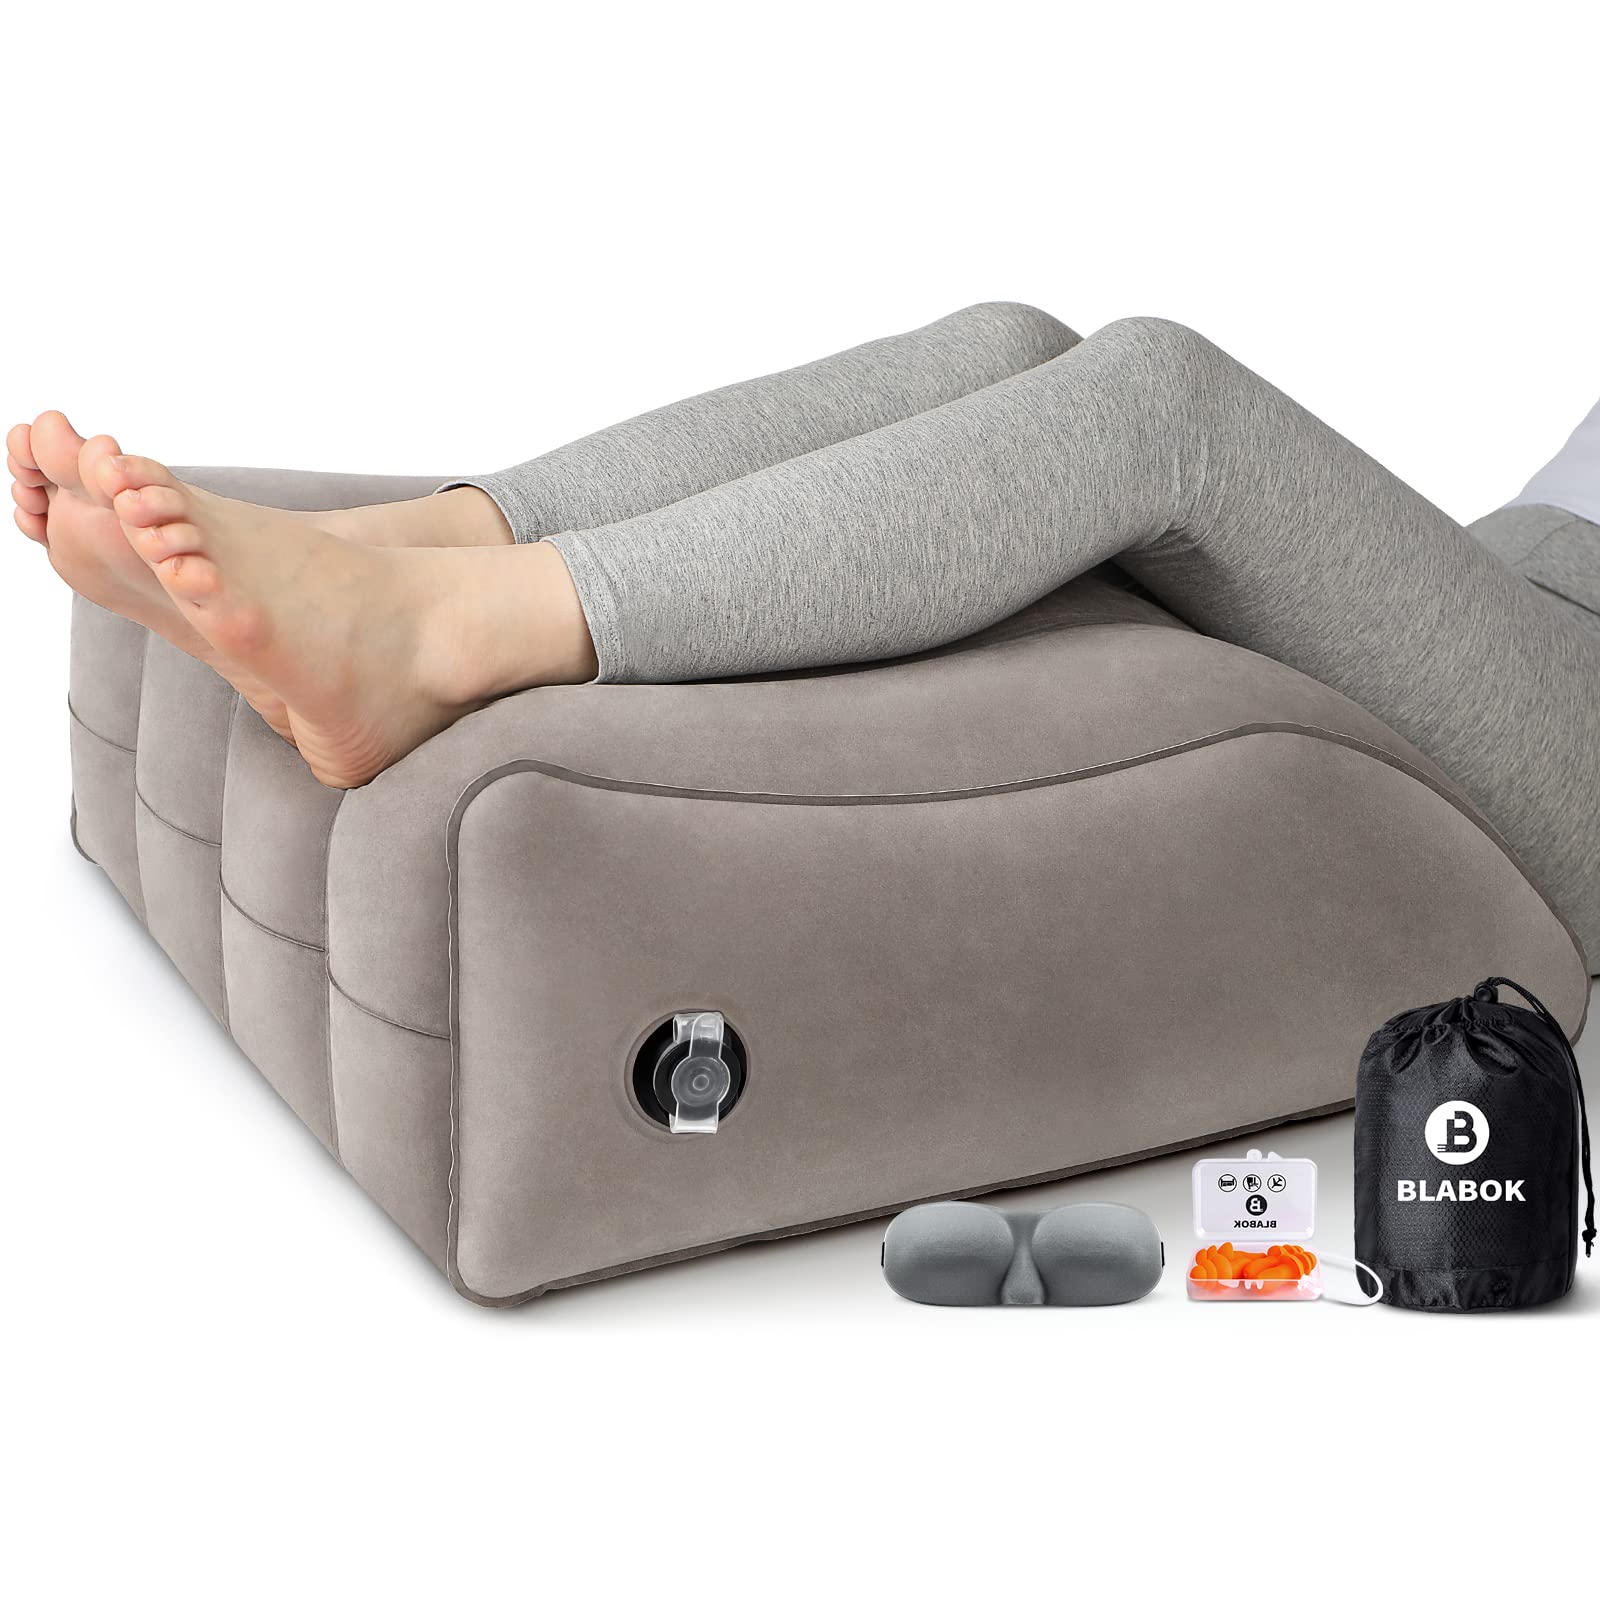 Подъемные подушки. Подушка для поднятия ног. Подушка для подъема ног в кровати купить.